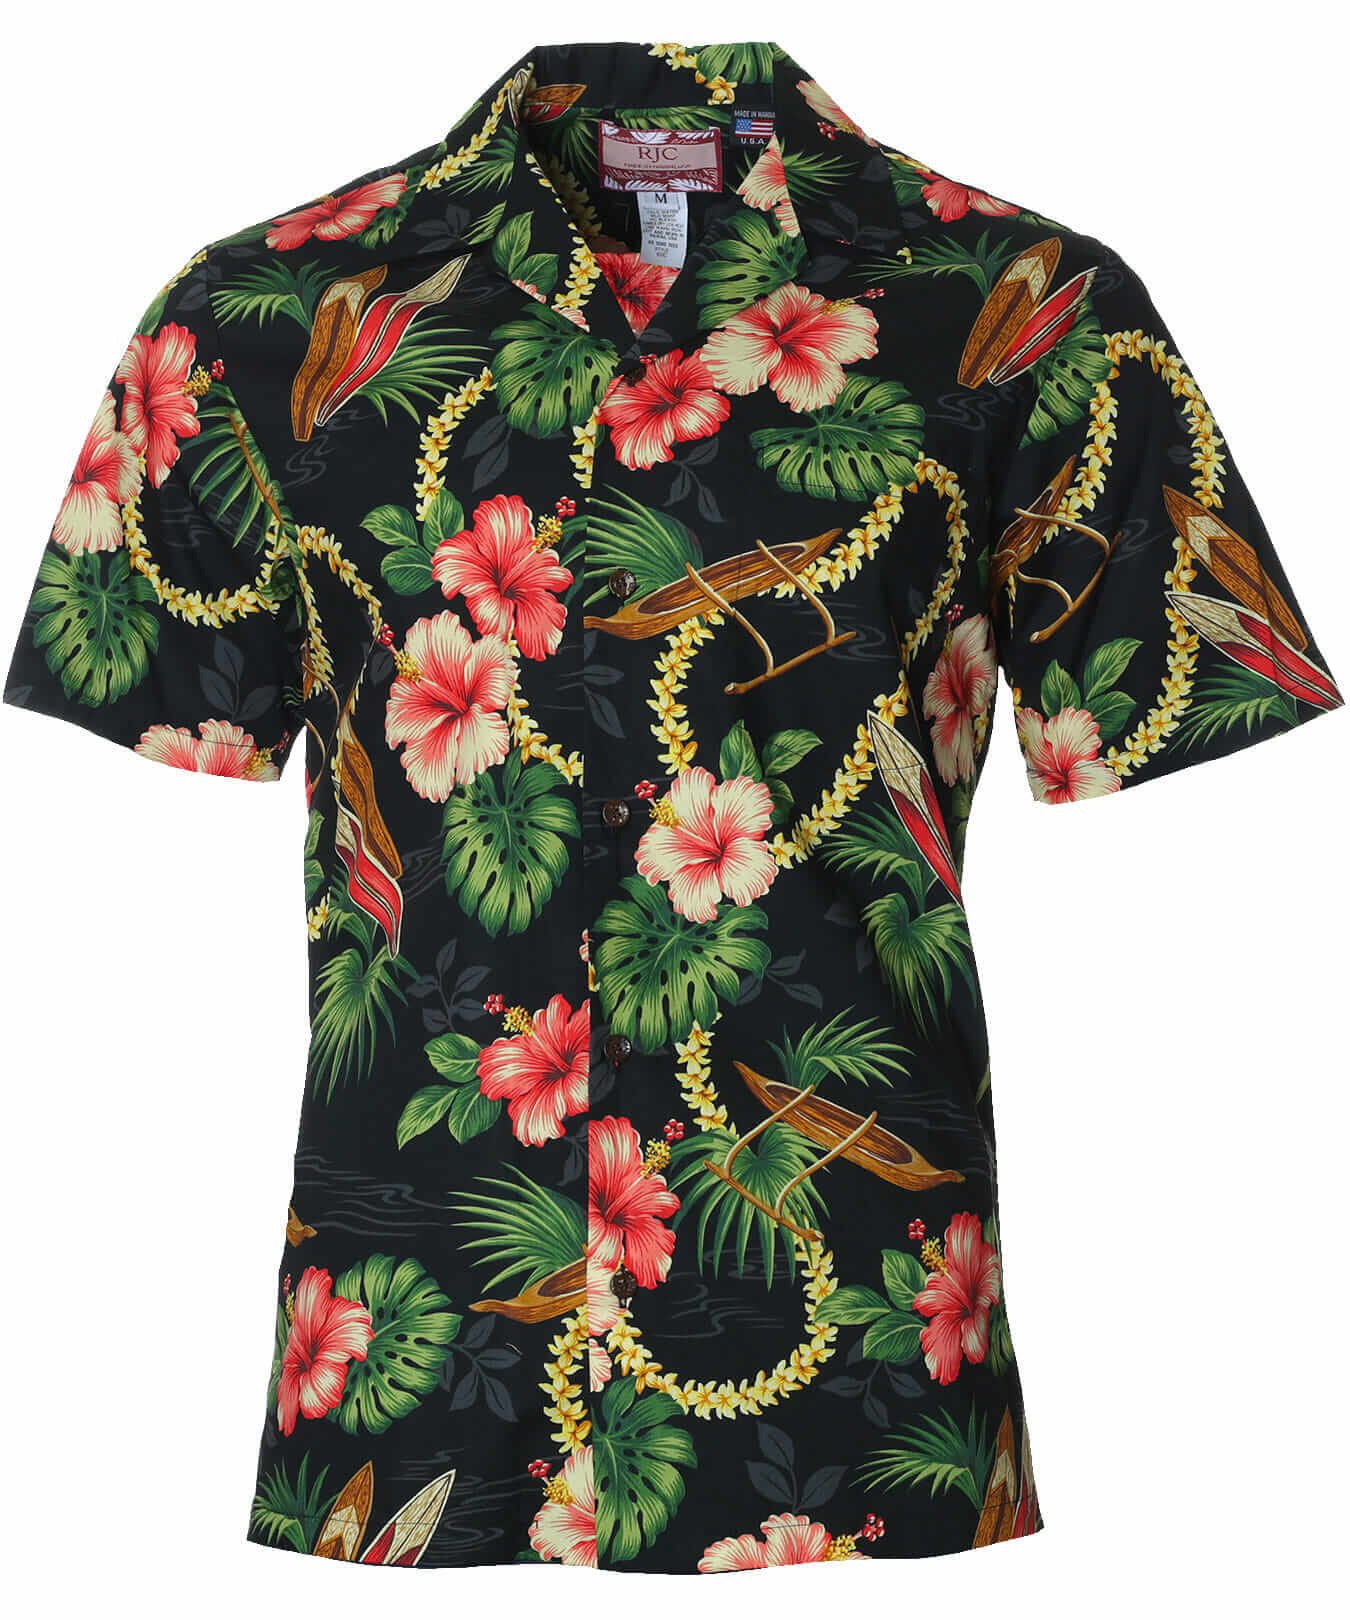 Leis of Hawaii Aloha Shirt Black